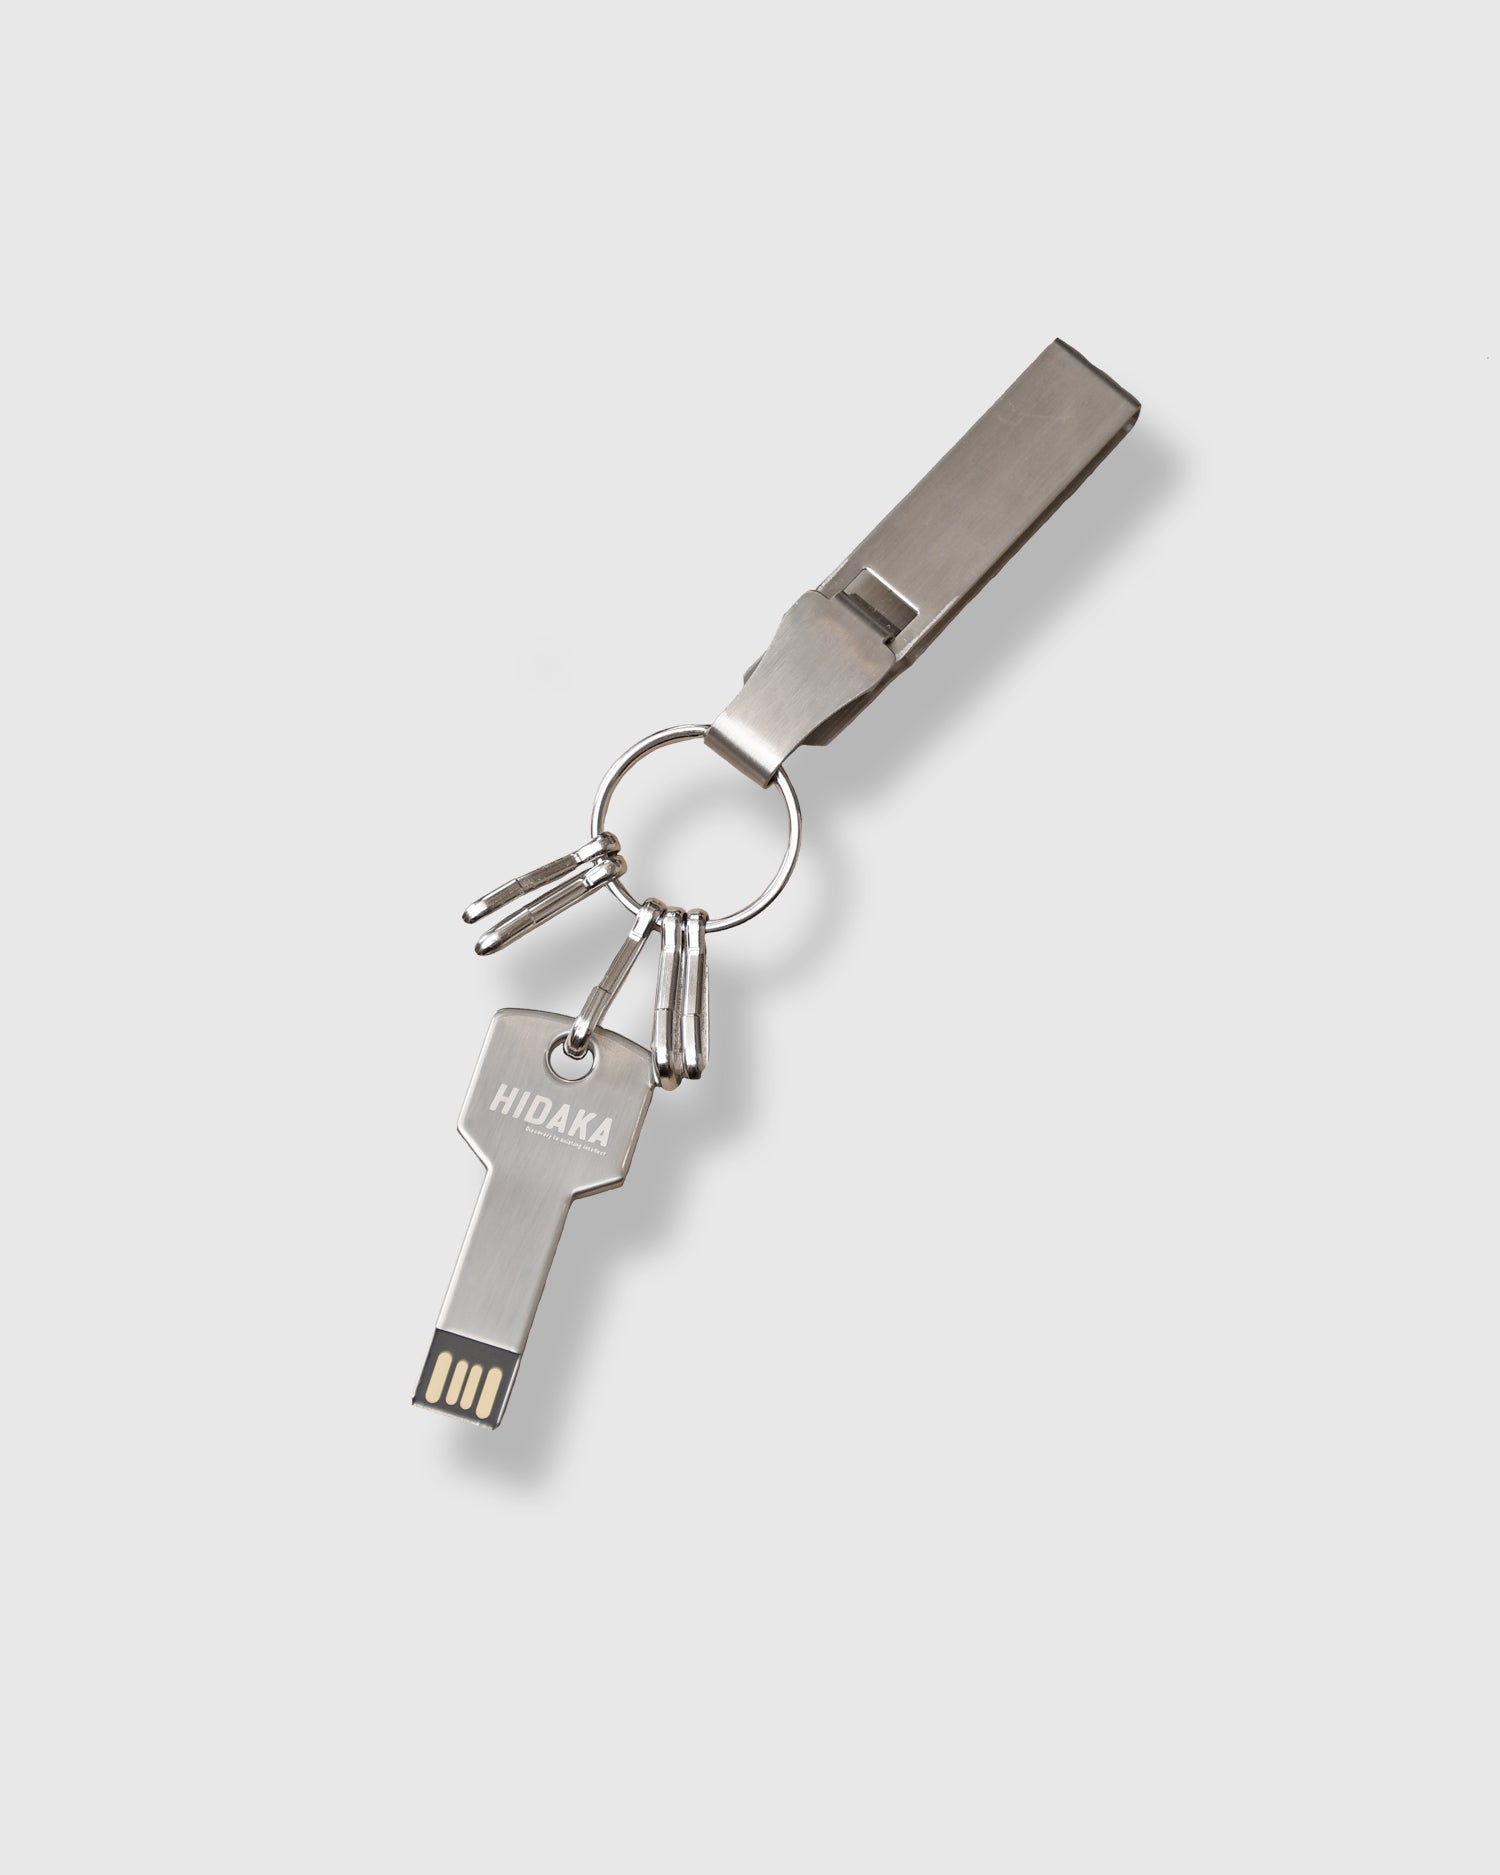 USB KEY RING